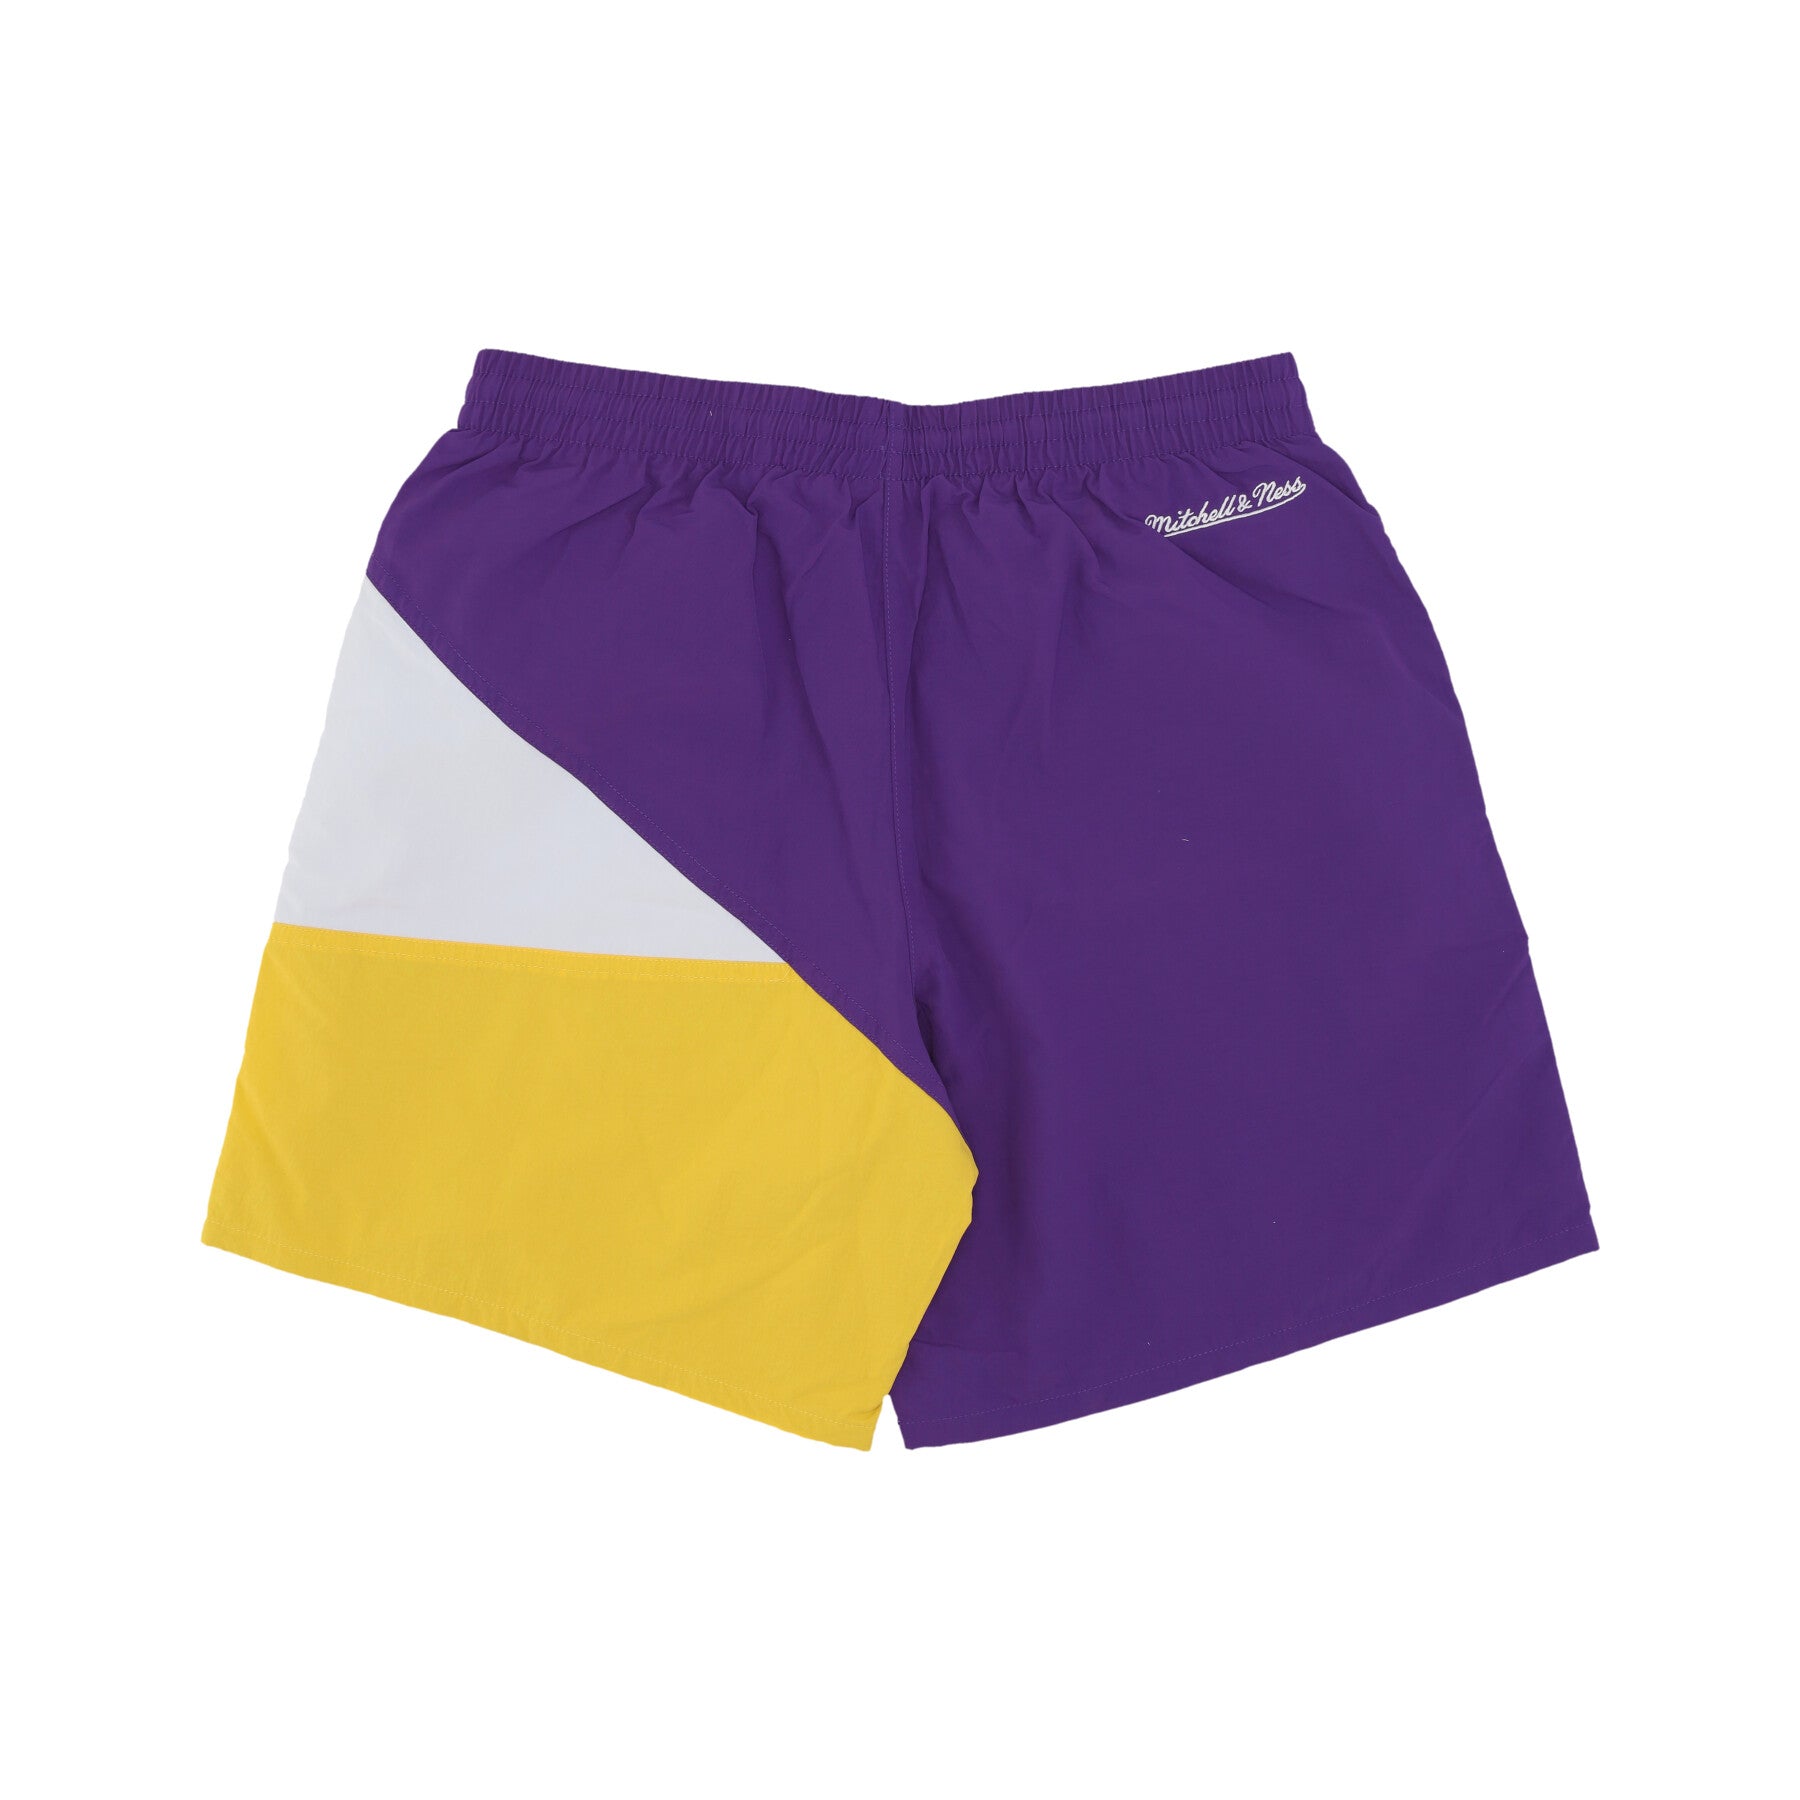 Pantaloncino Uomo Ncaa Woven Shorts Vintage Logo Loutig Original Team Colors PSHR6600-LSUYYPPPPURP